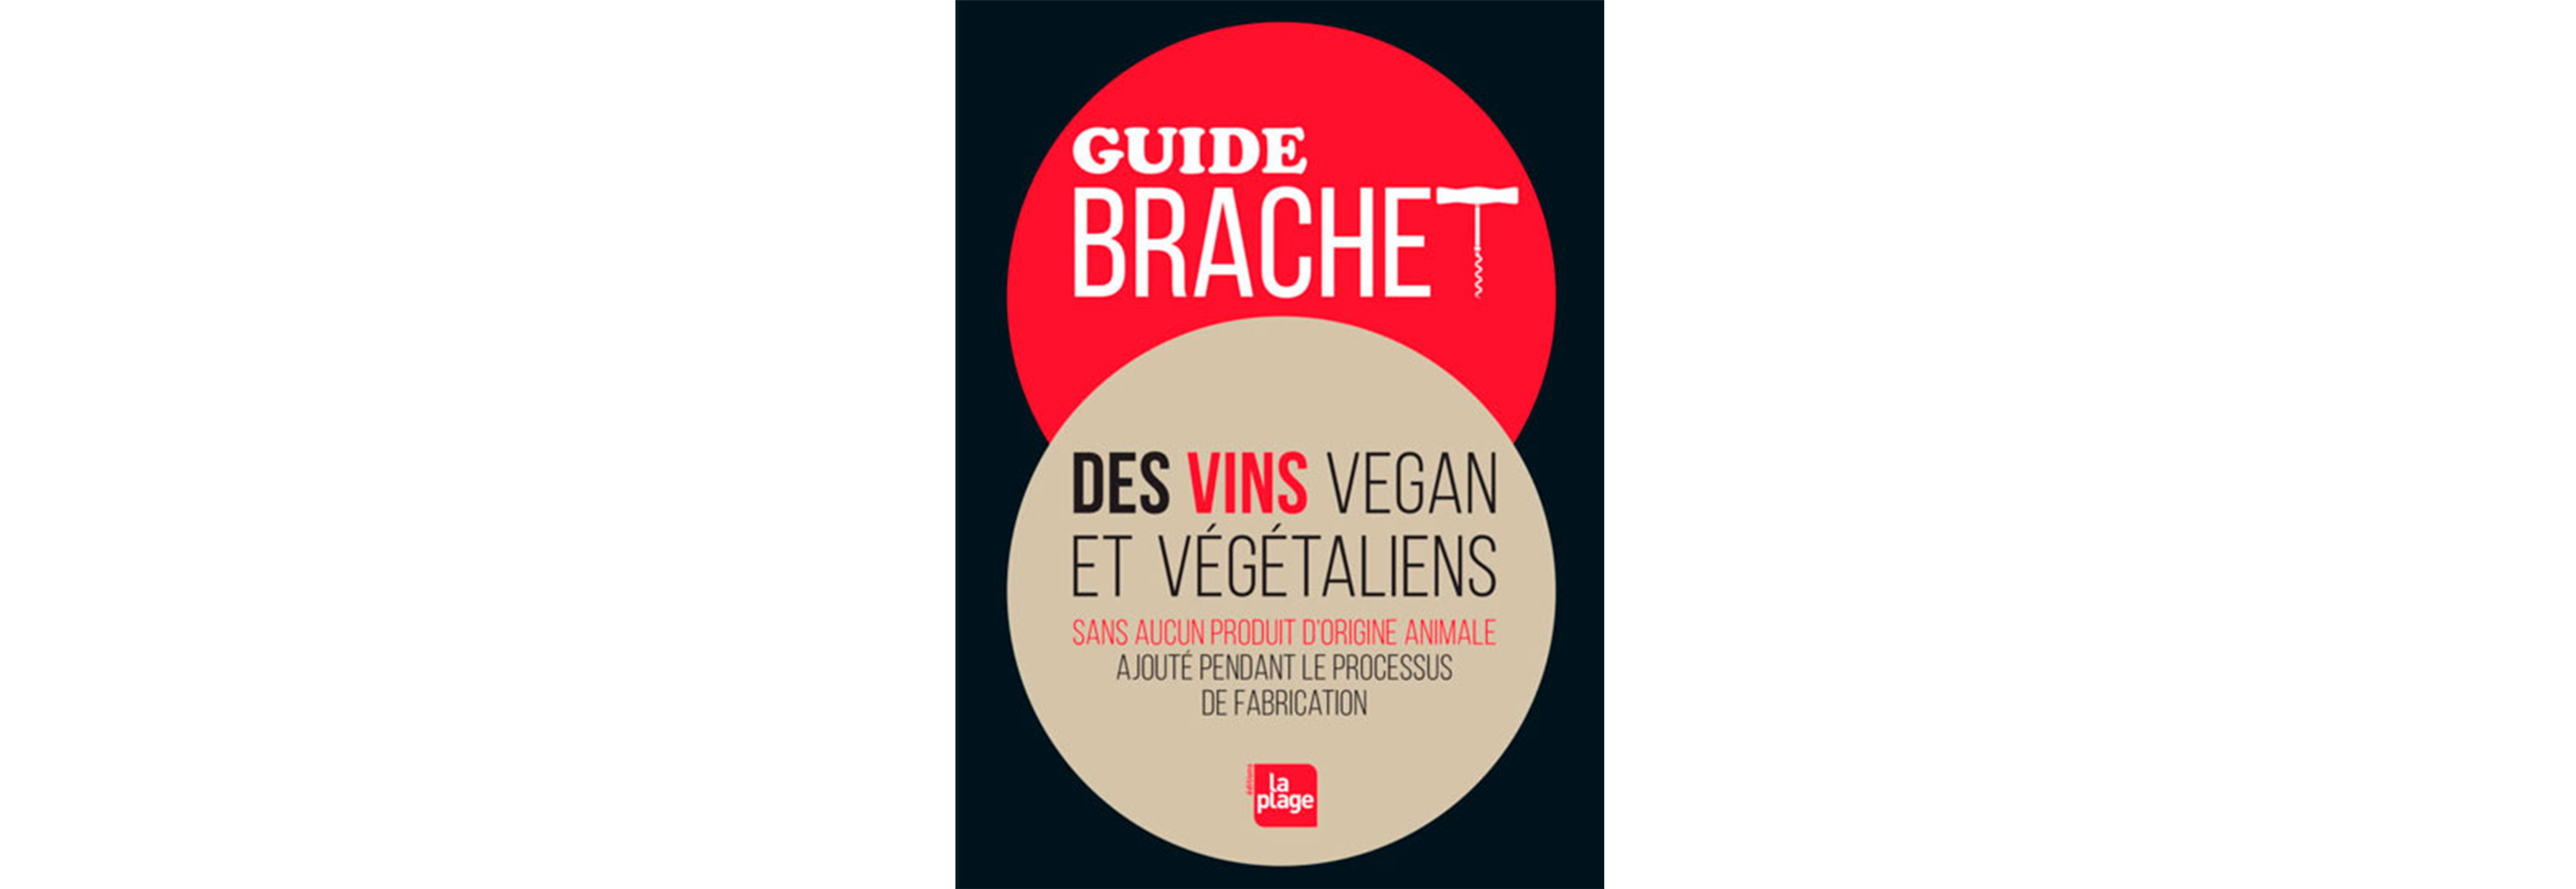 Guide Brachet des vins vegan et végétaliens, éditions la place
Source : laplage.fr